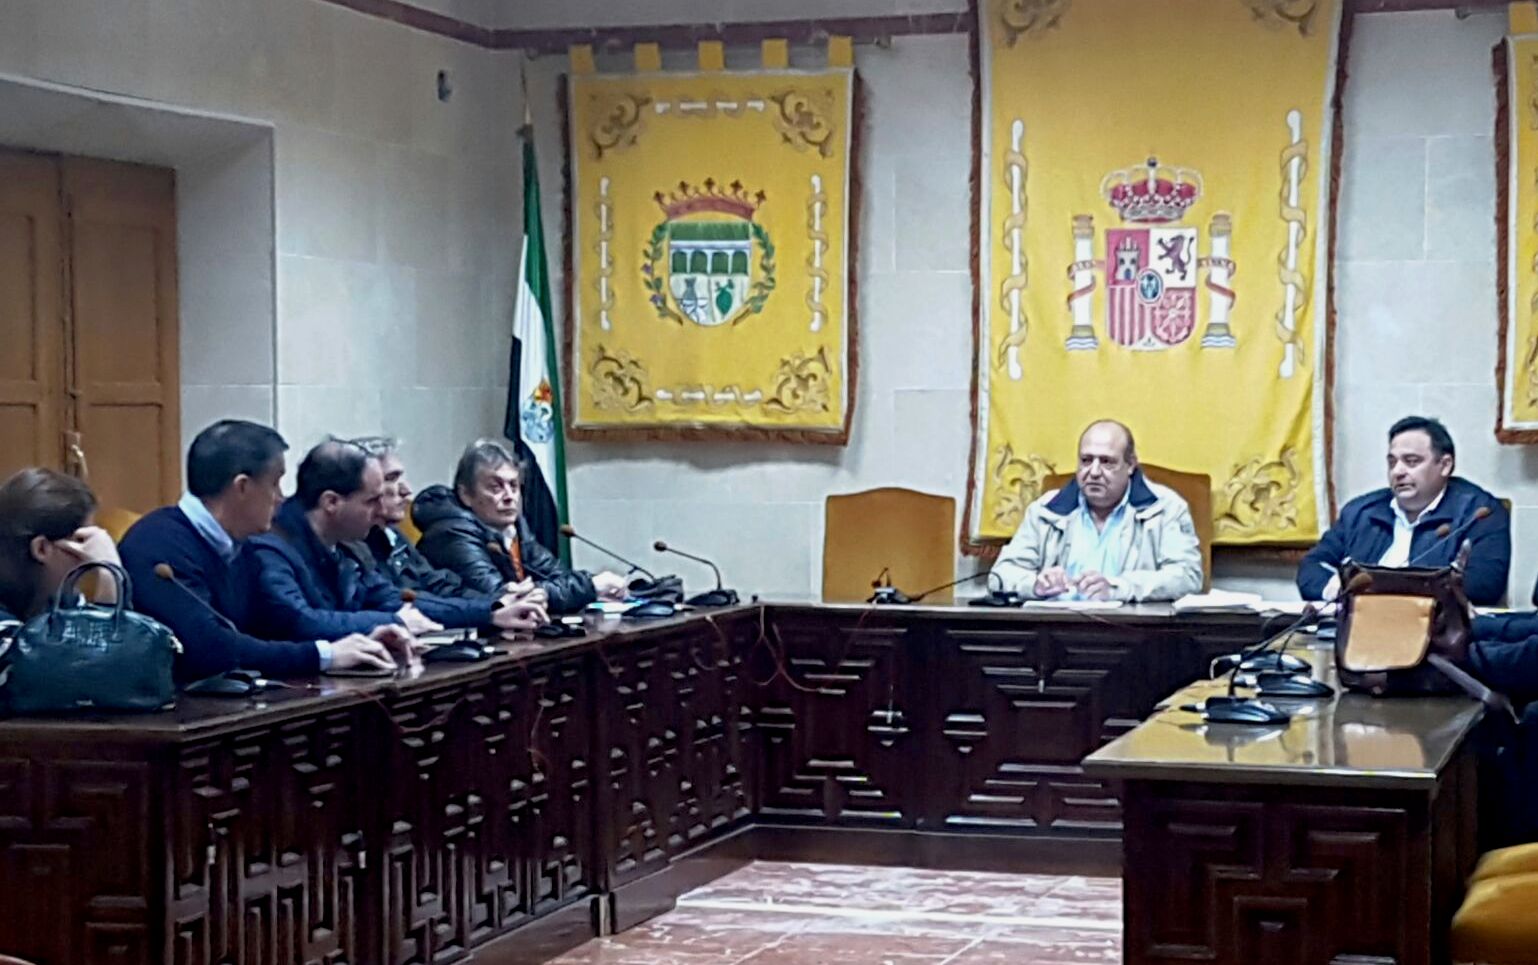 Los municipios de la zona enfrentados a la Confederación Hidrográfica del Tajo acuerdan unir sus fuerzas